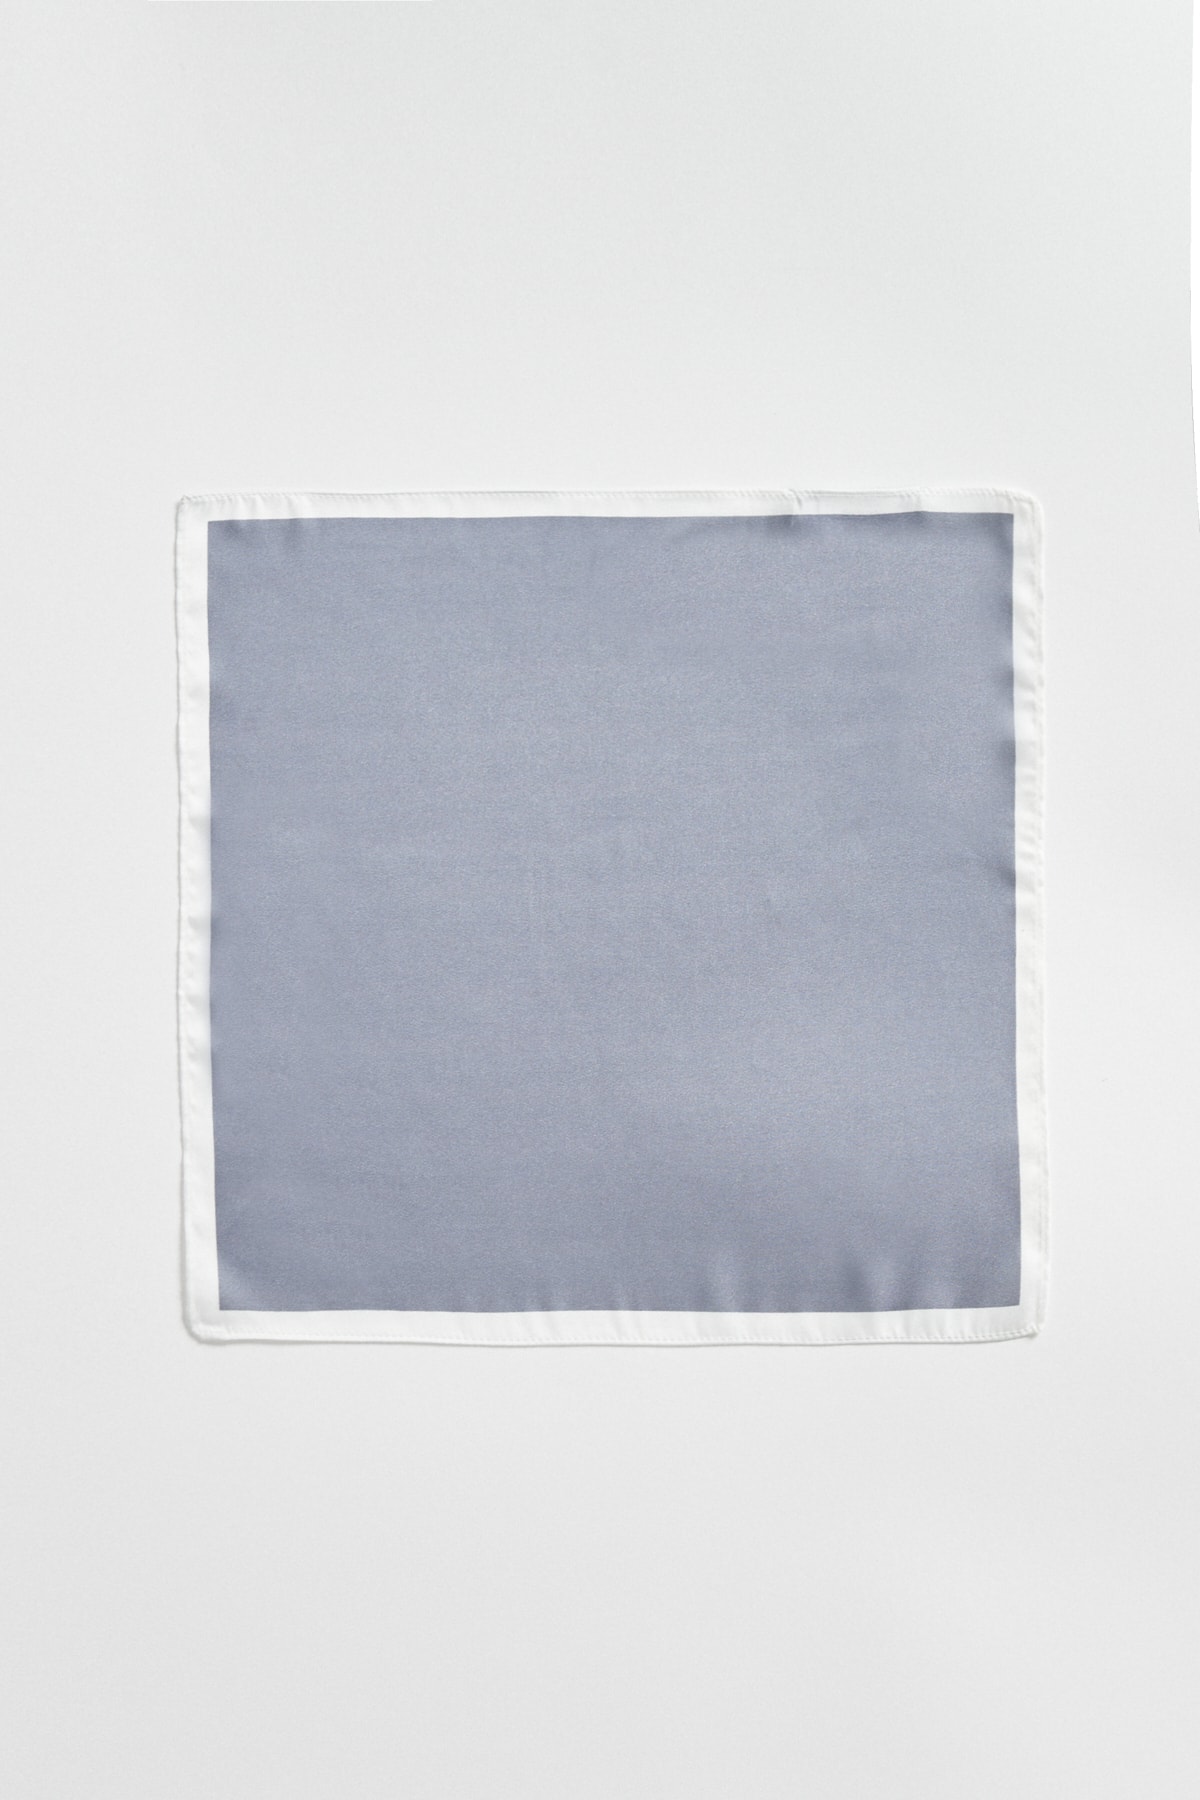 ALTINYILDIZ CLASSICS Men's Gray Handkerchief